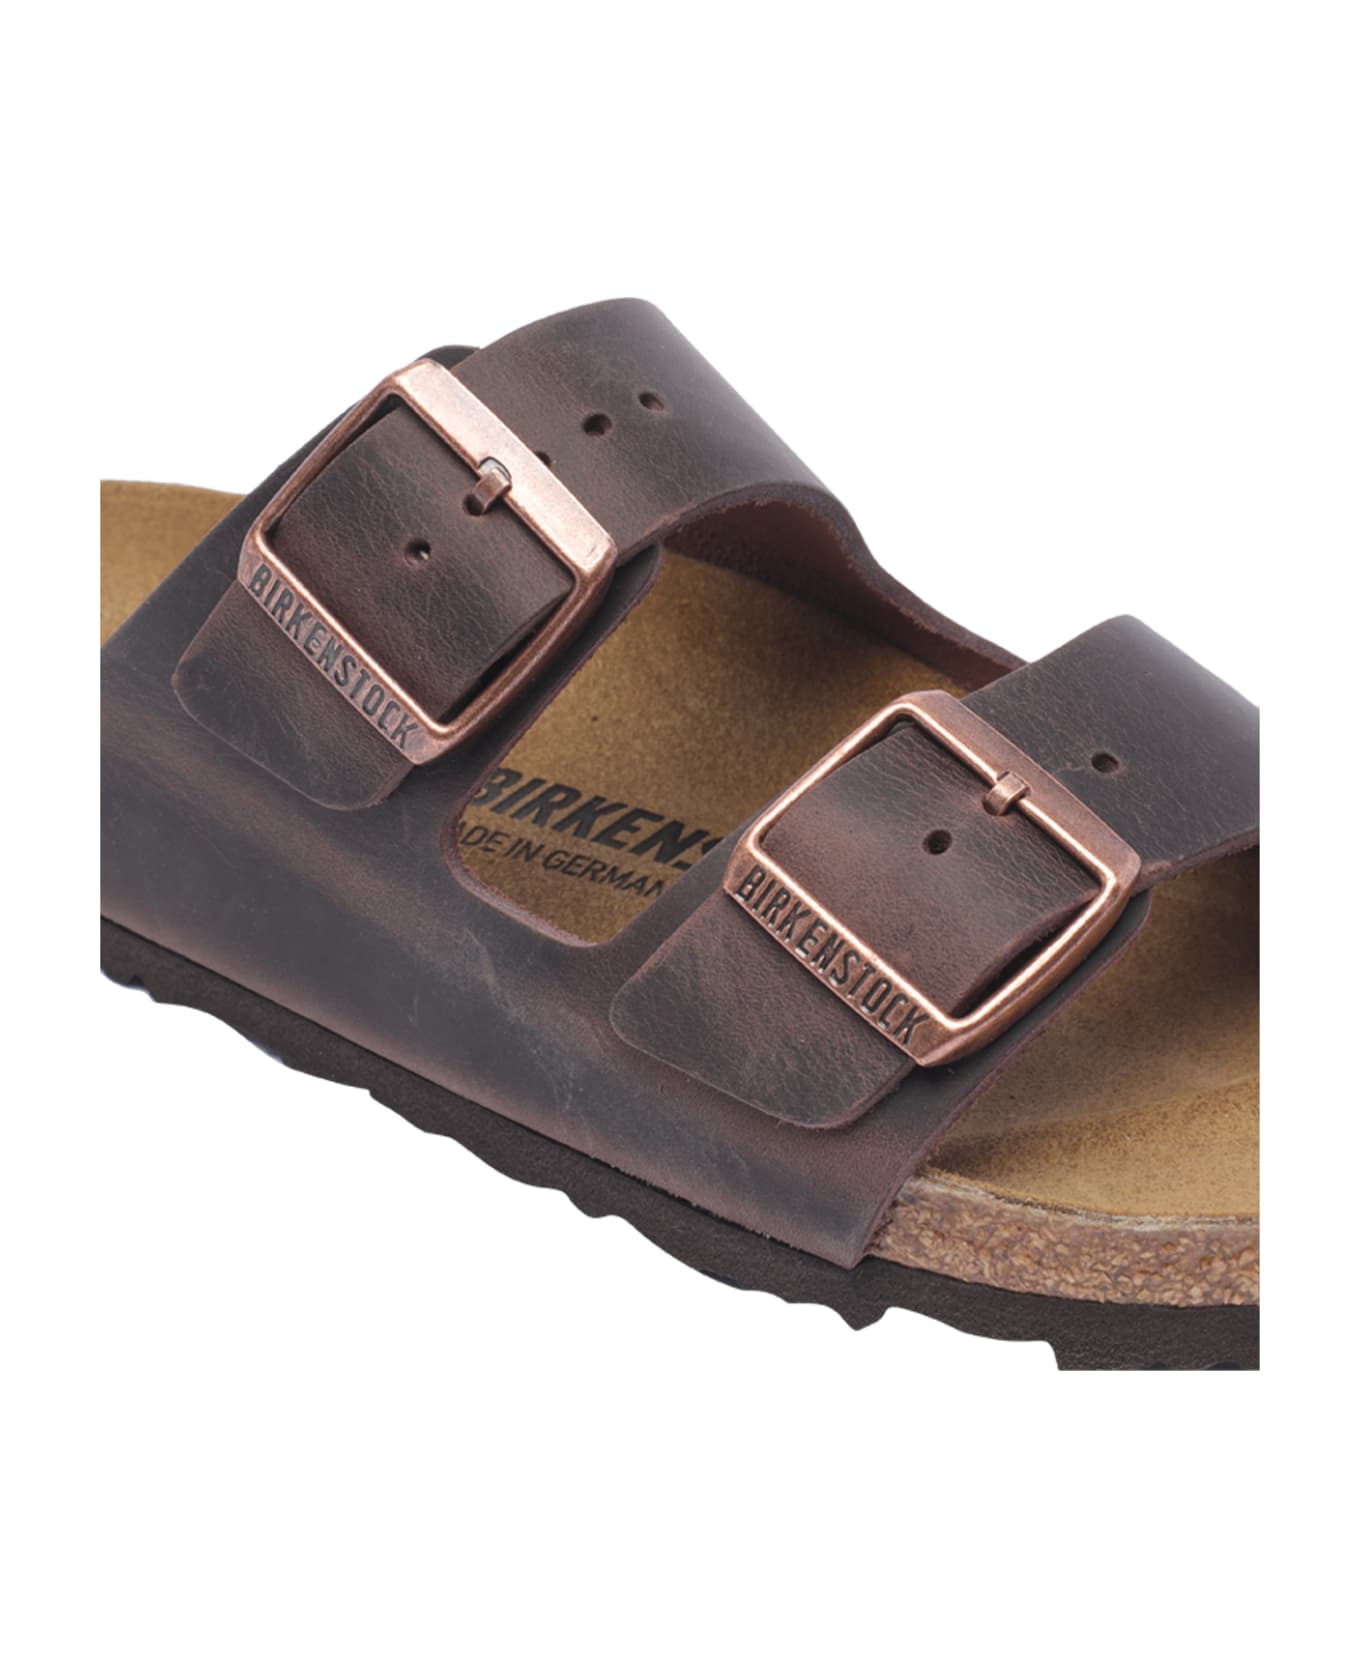 Birkenstock Arizona Sandals - Brown